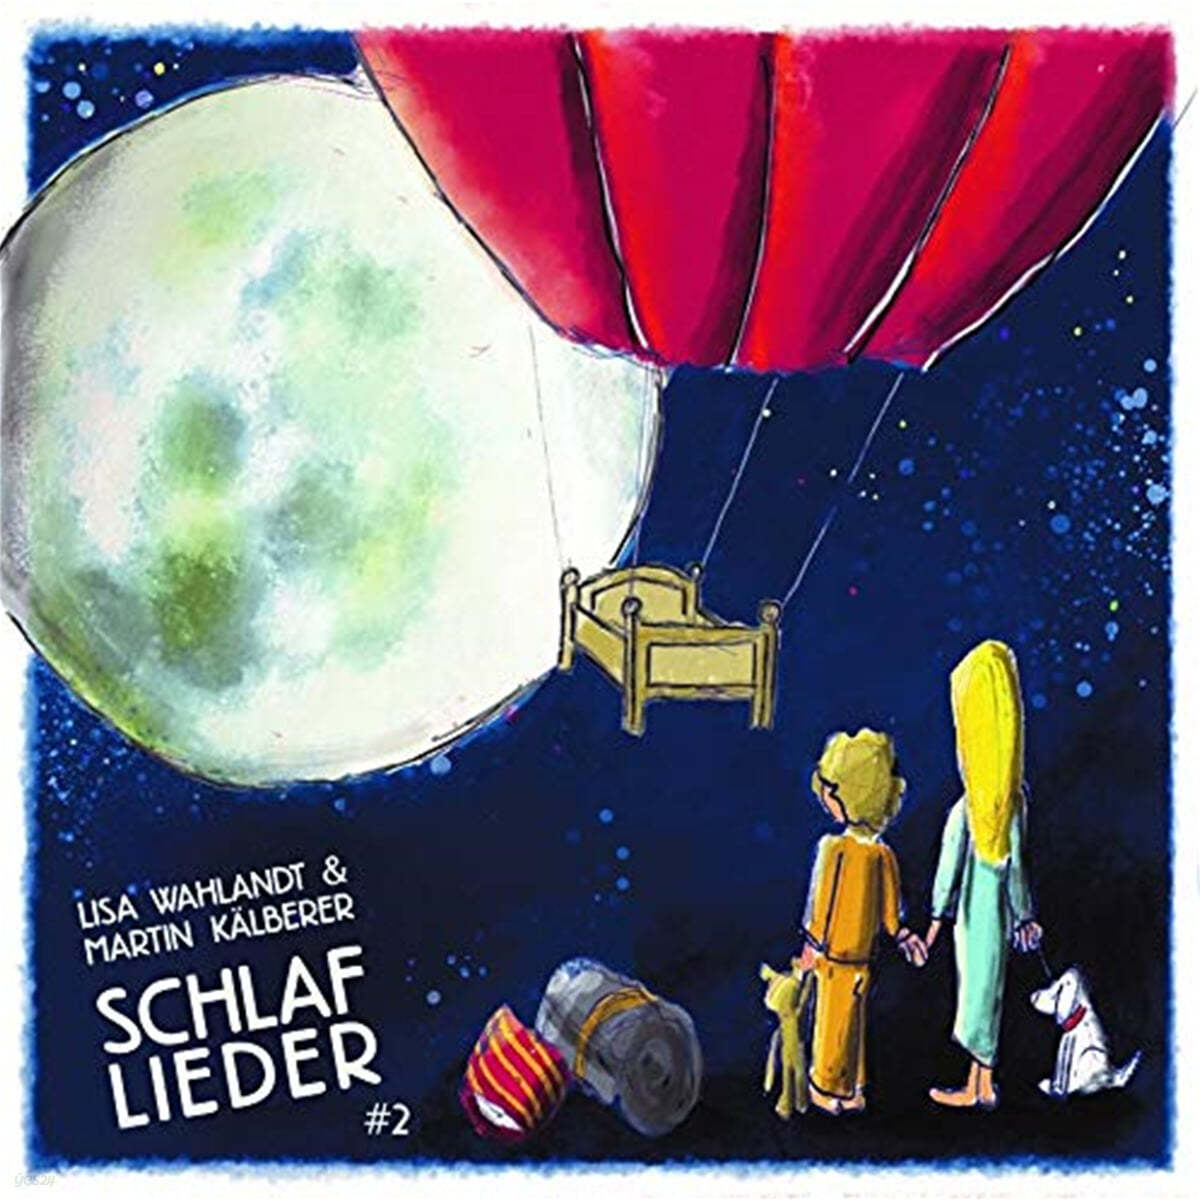 Lisa Wahlandt / Martin Kalberer (리사 발란트 / 마틴 칼베러) - Gute Nacht Lieder Nummer 2 